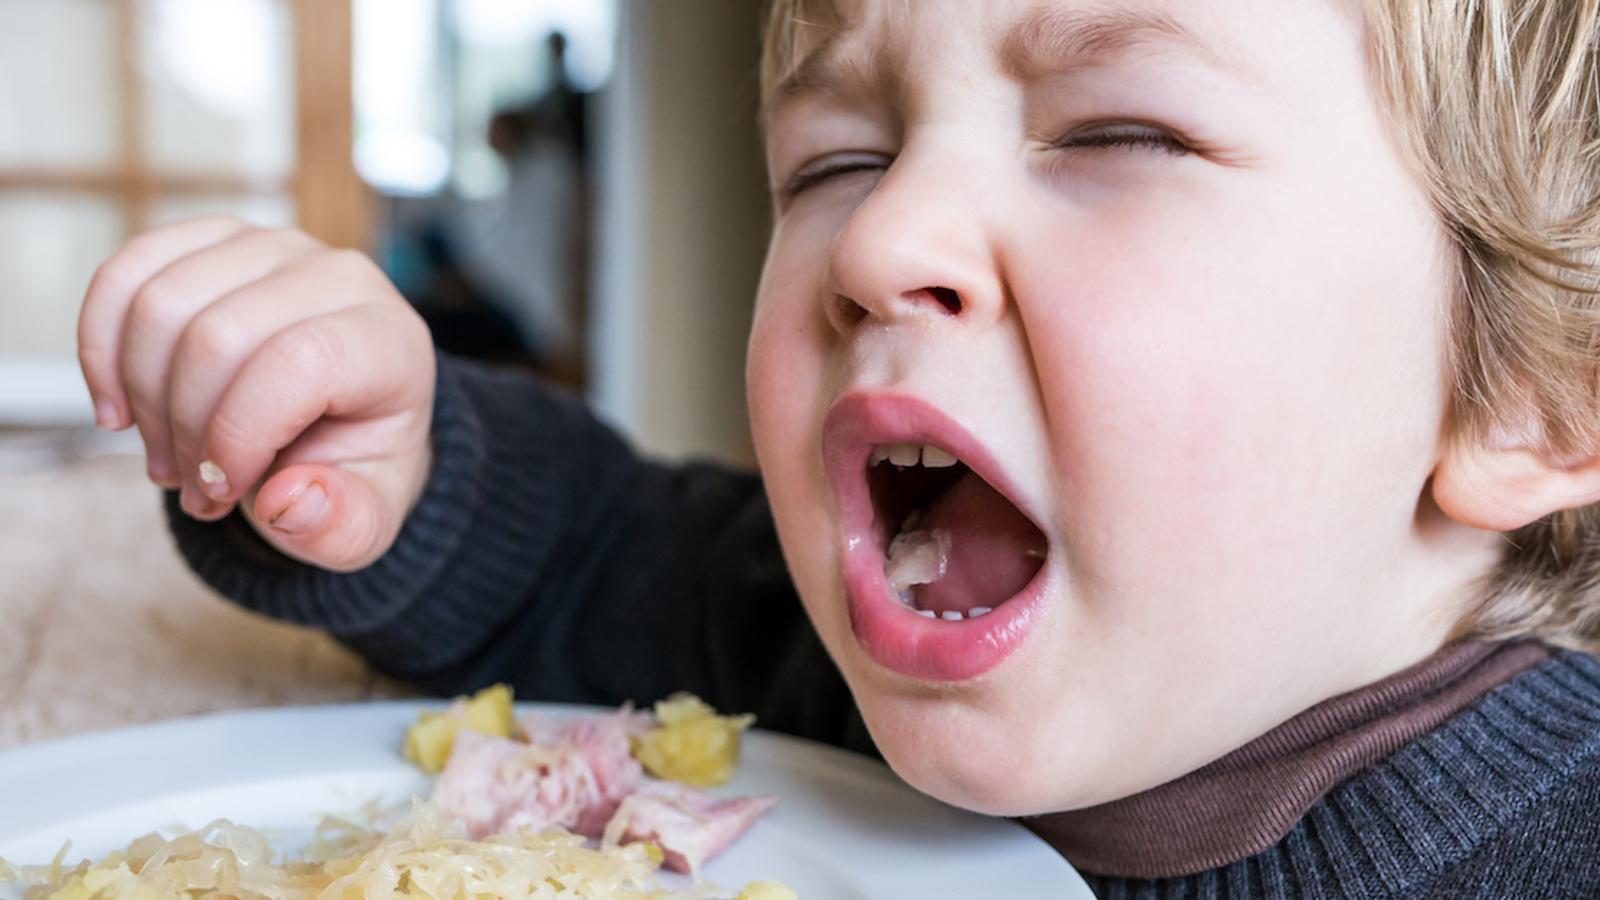 Le fait de manger la bouche ouverte ajoute du goût à la nourriture, selon la science